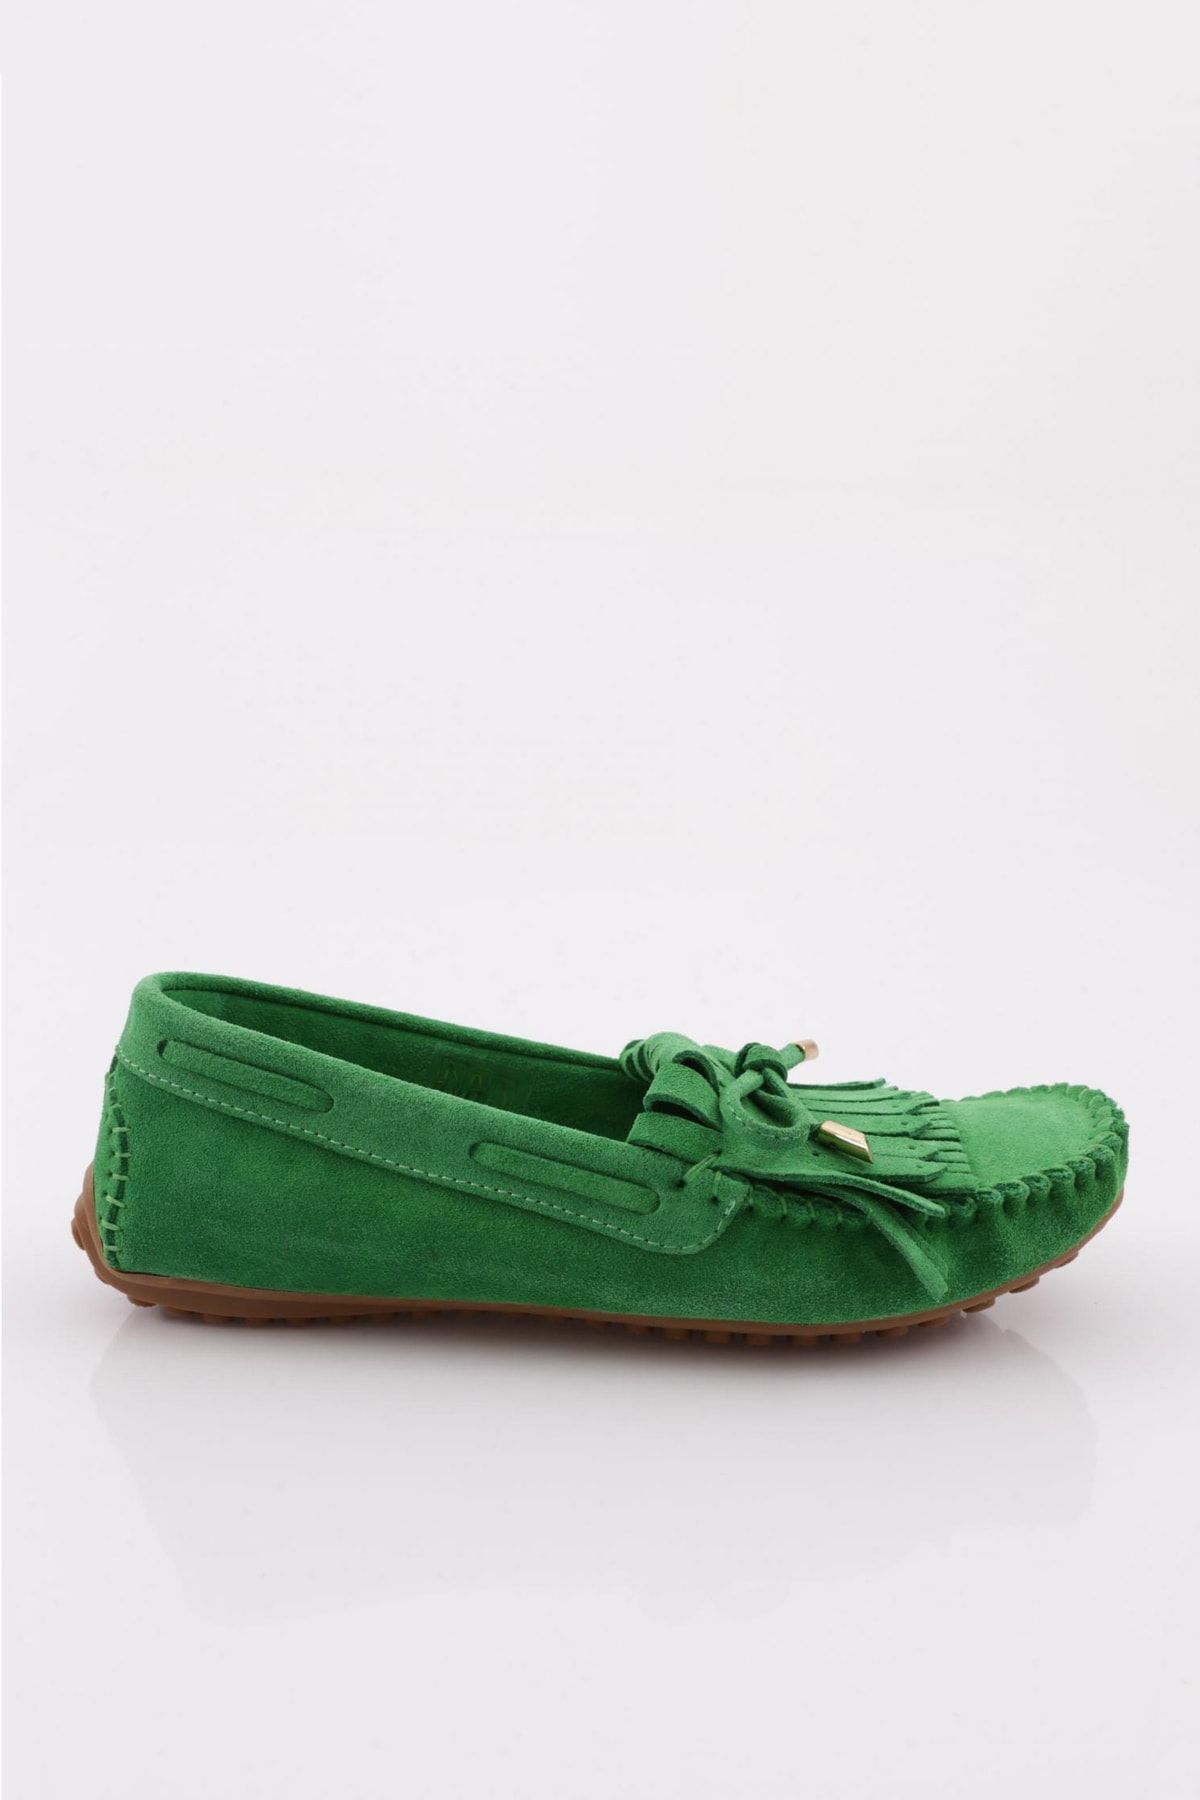 Dgn Kadın Püskül Detaylı Loafer Ayakkabı Yeşil Süet Hakiki Deri